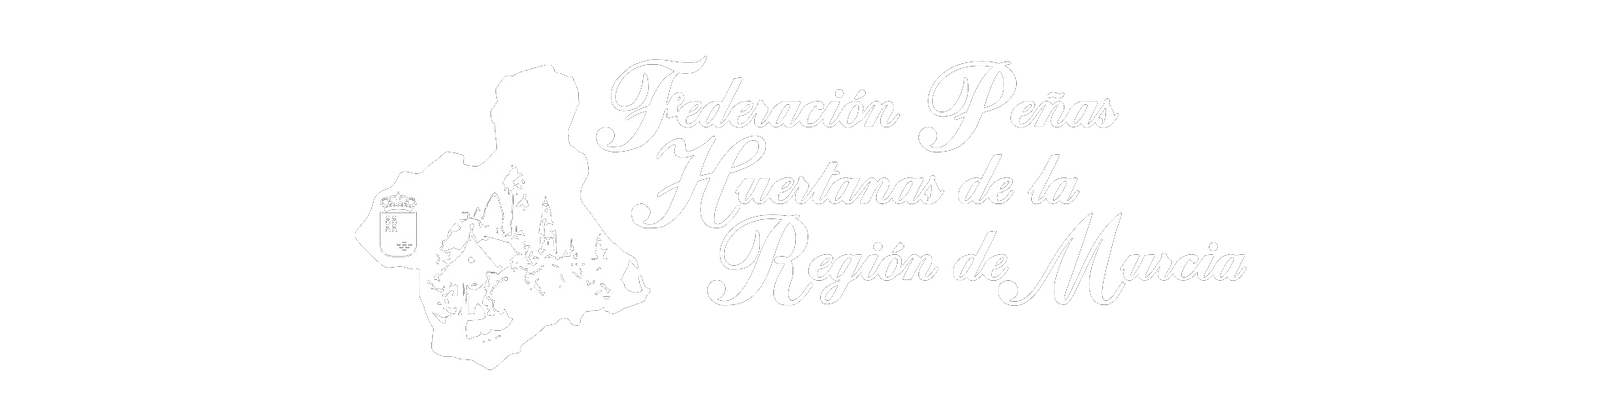 Federación de Peñas Huertanas de la Región de Murcia